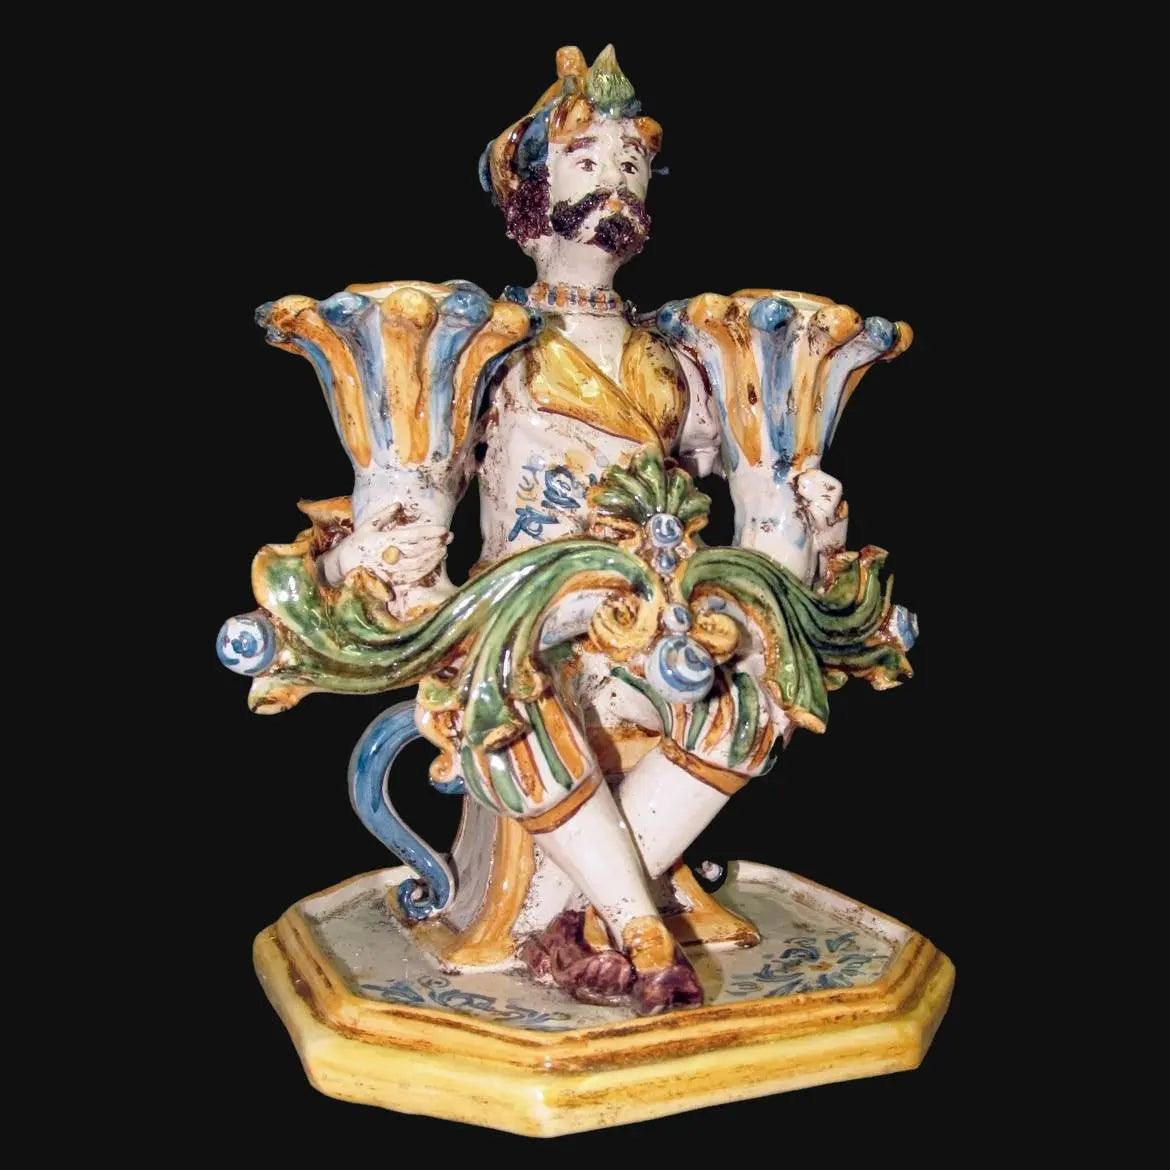 Scrivano portacandele 2 fuochi h 27 tricolore - Ceramiche di Caltagirone Sofia